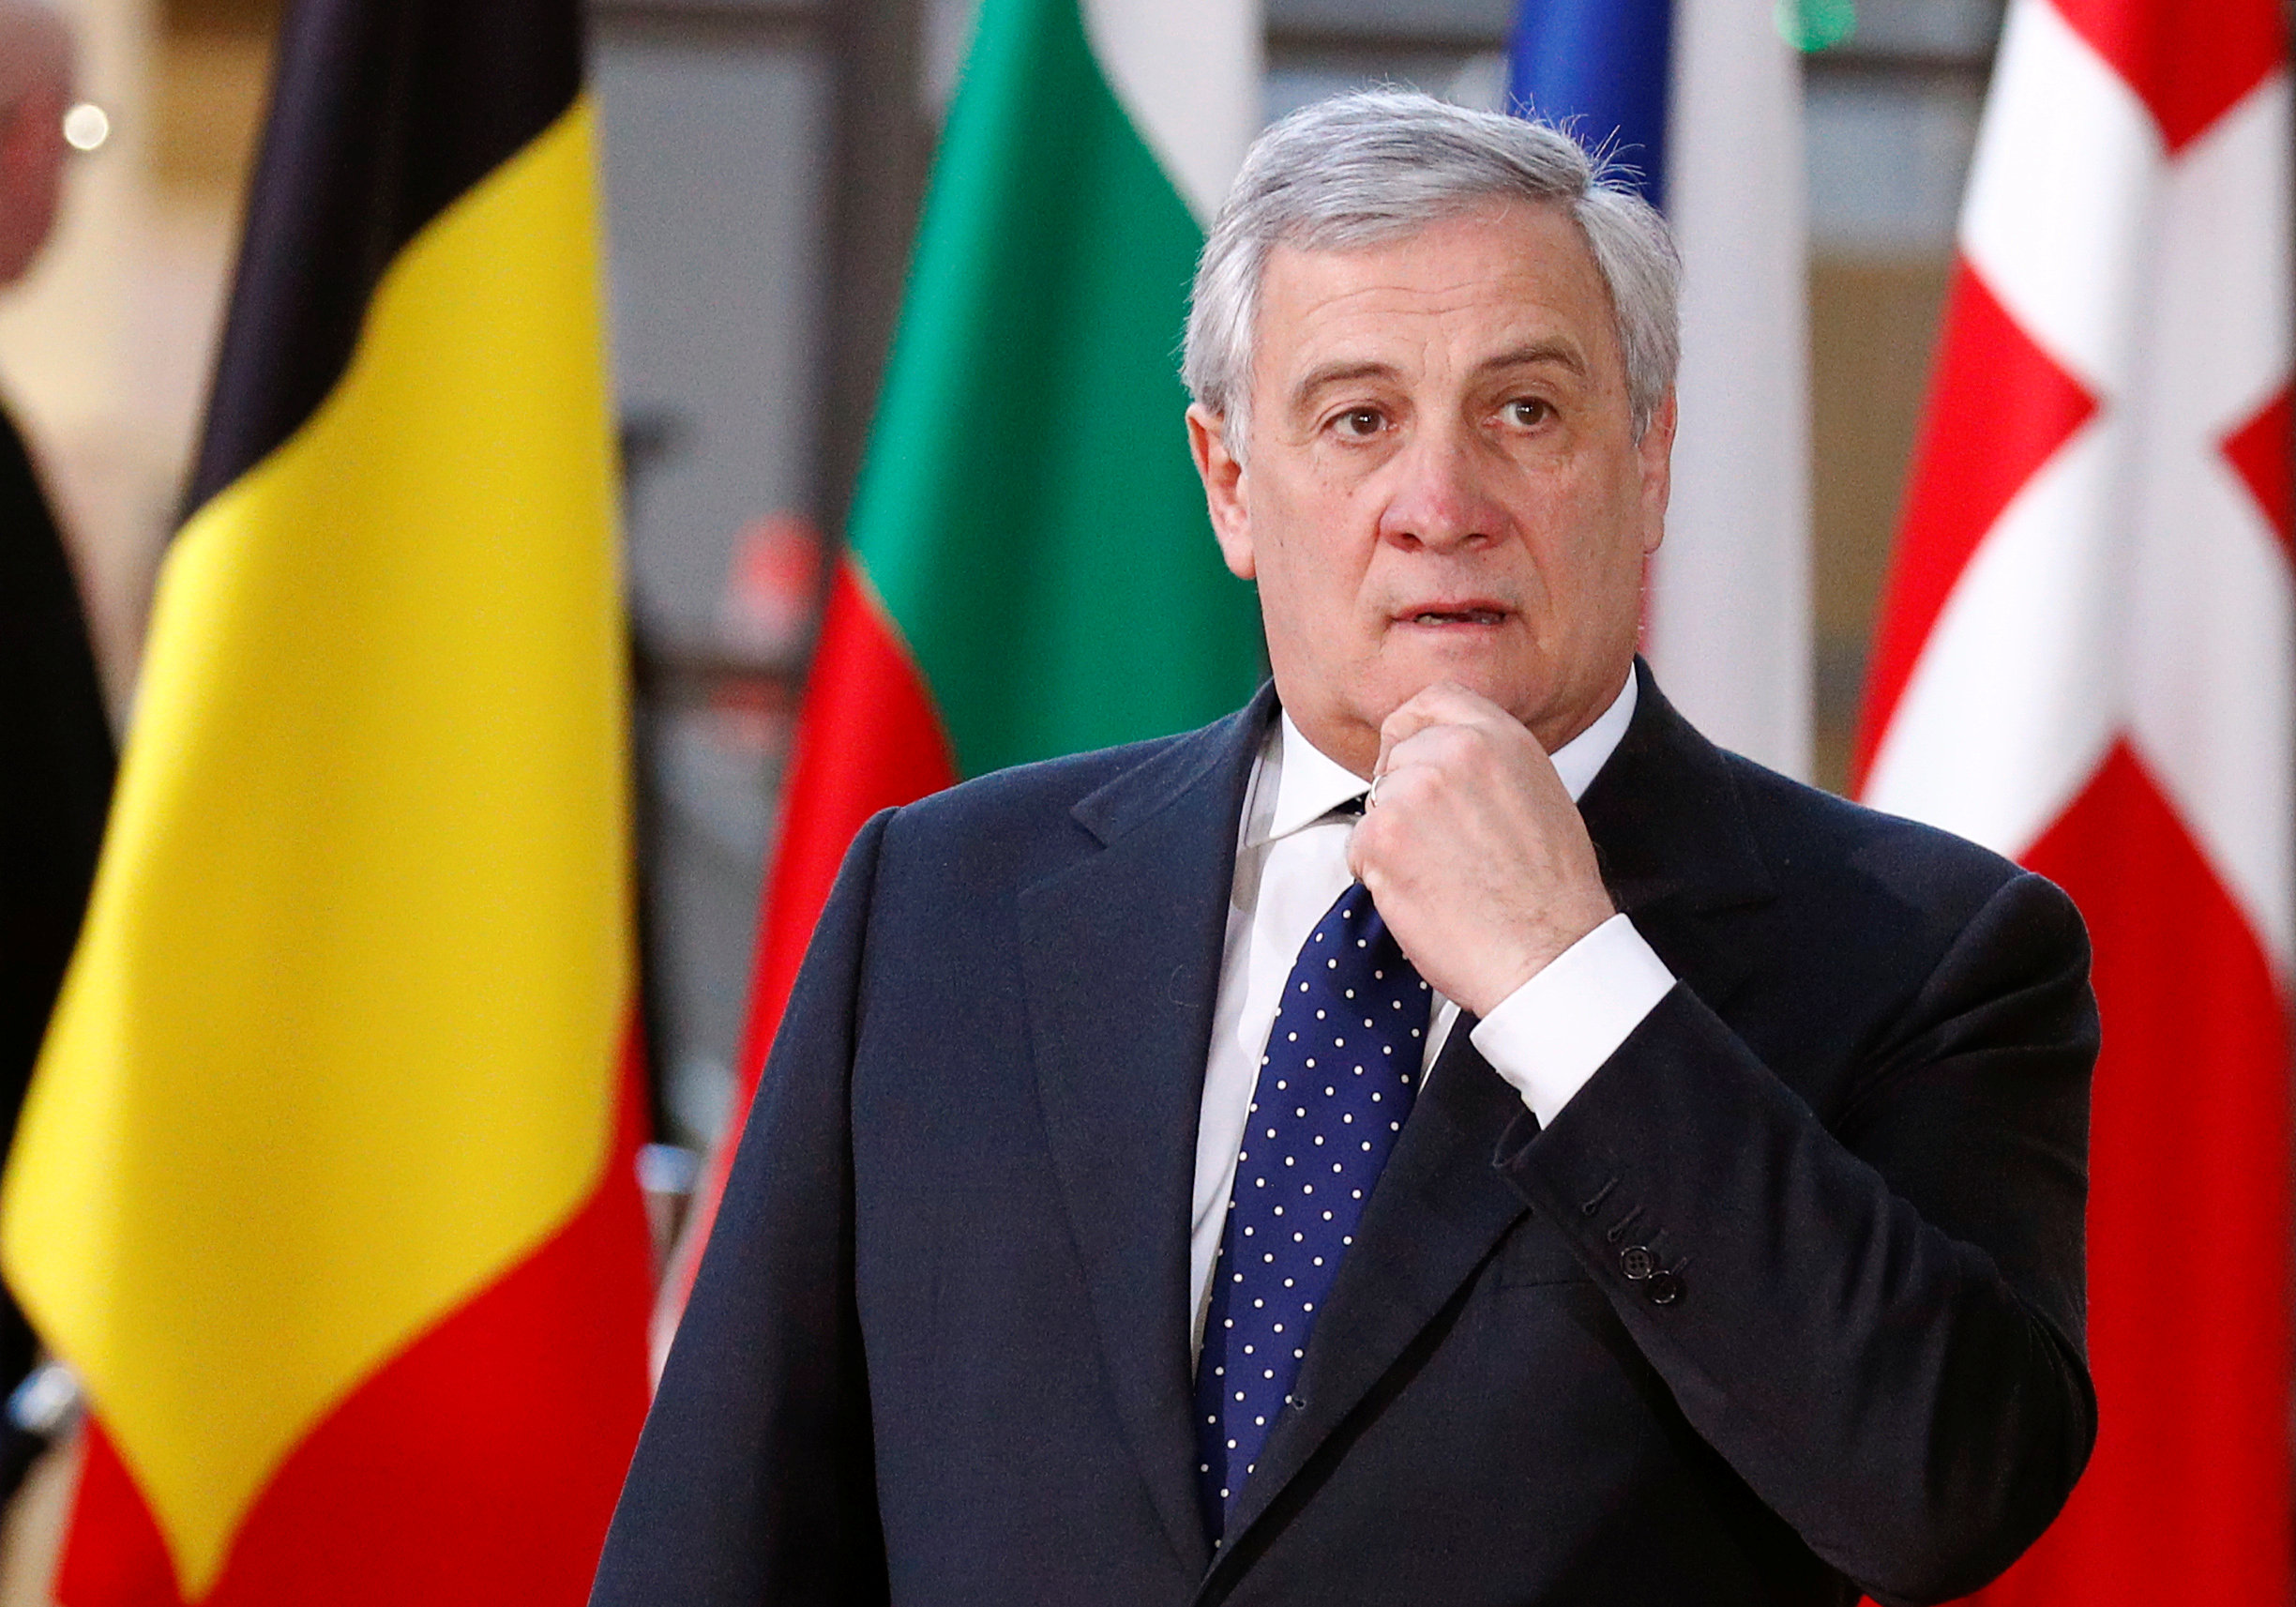 Antonio Tajani pide a Italia que se sume a Europa y reconozca a Guaidó